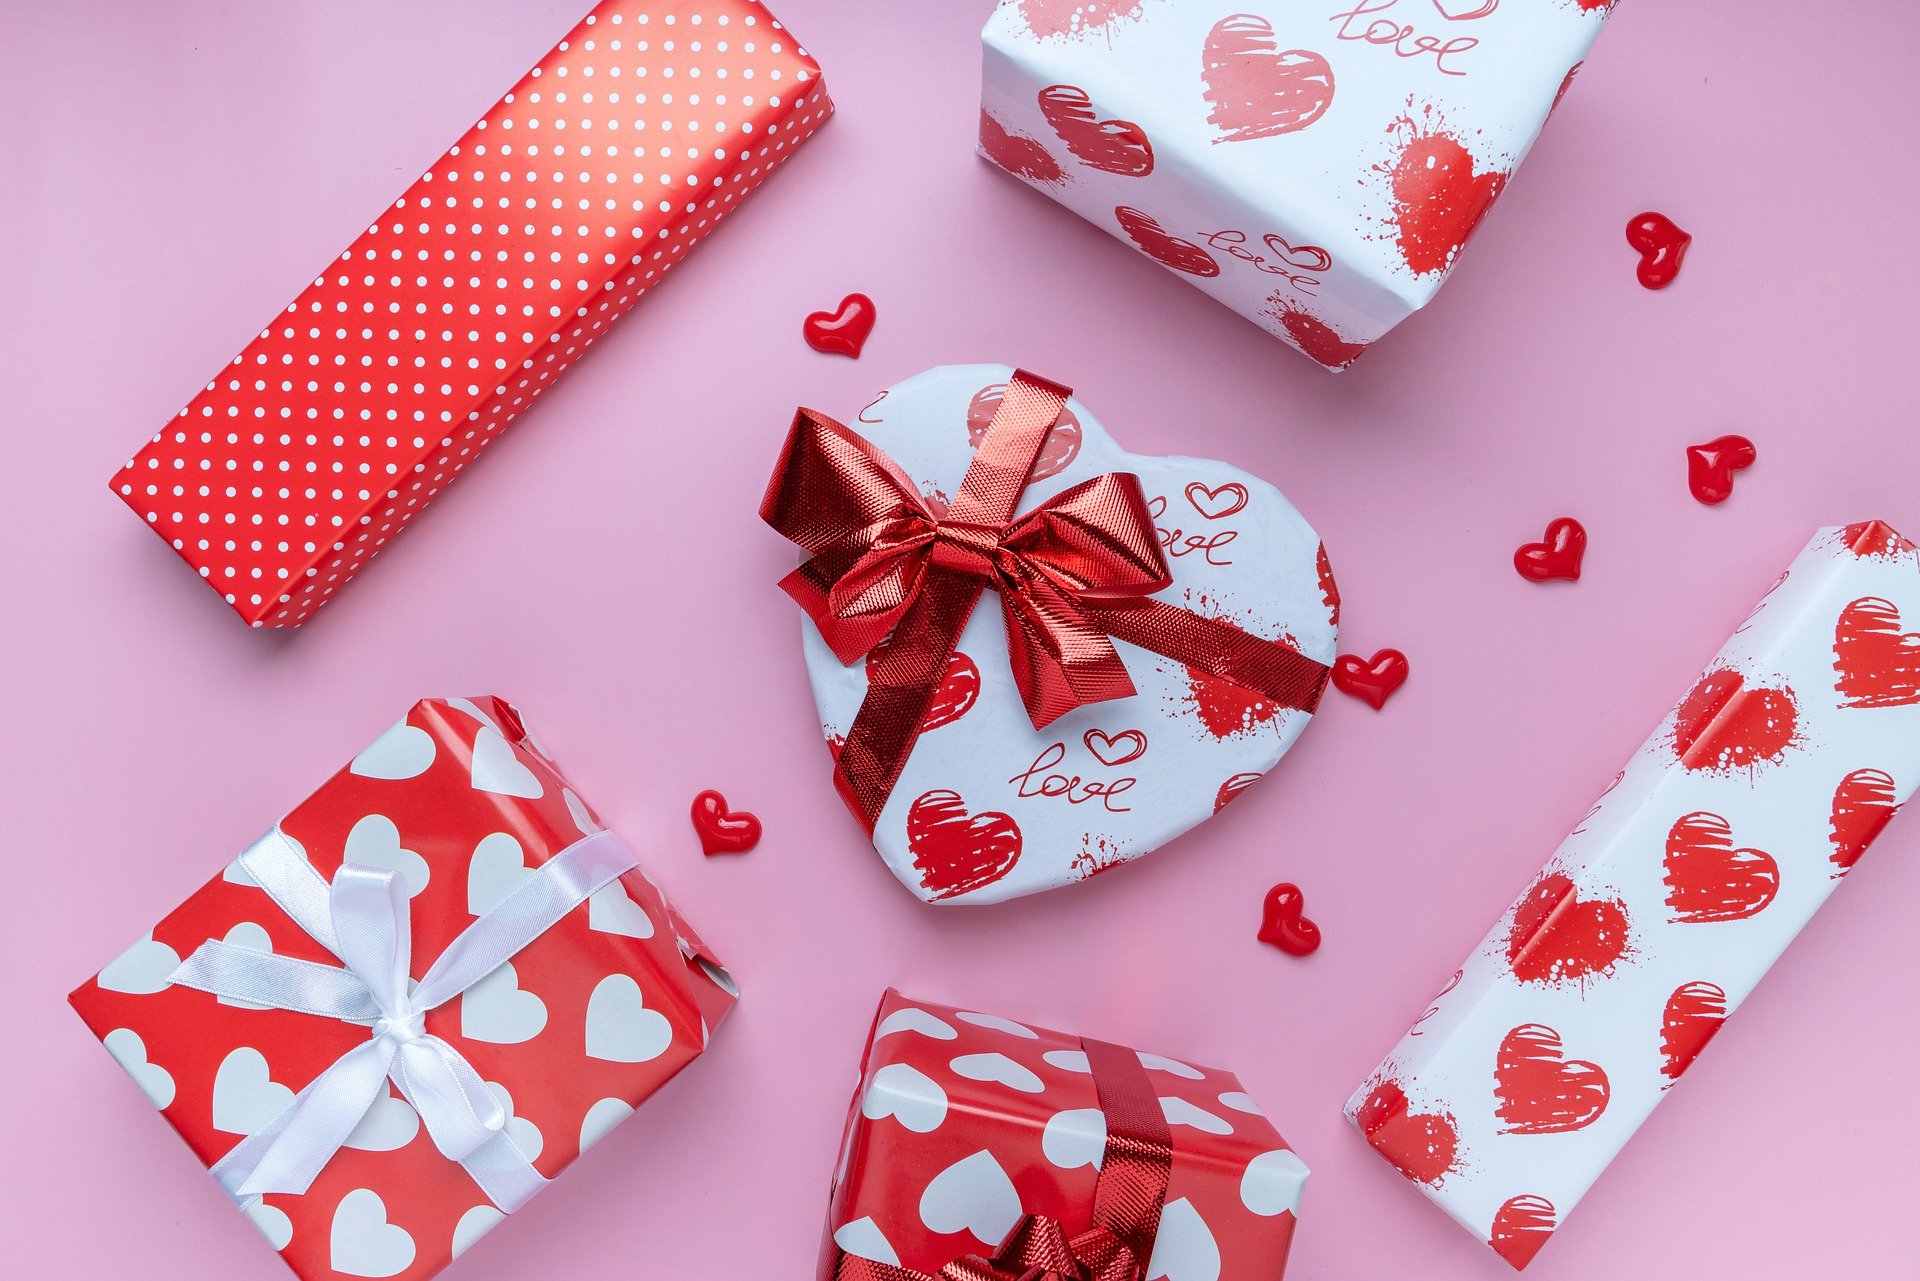 Regalos de San Valentín: Inspiraciones para los enamorados